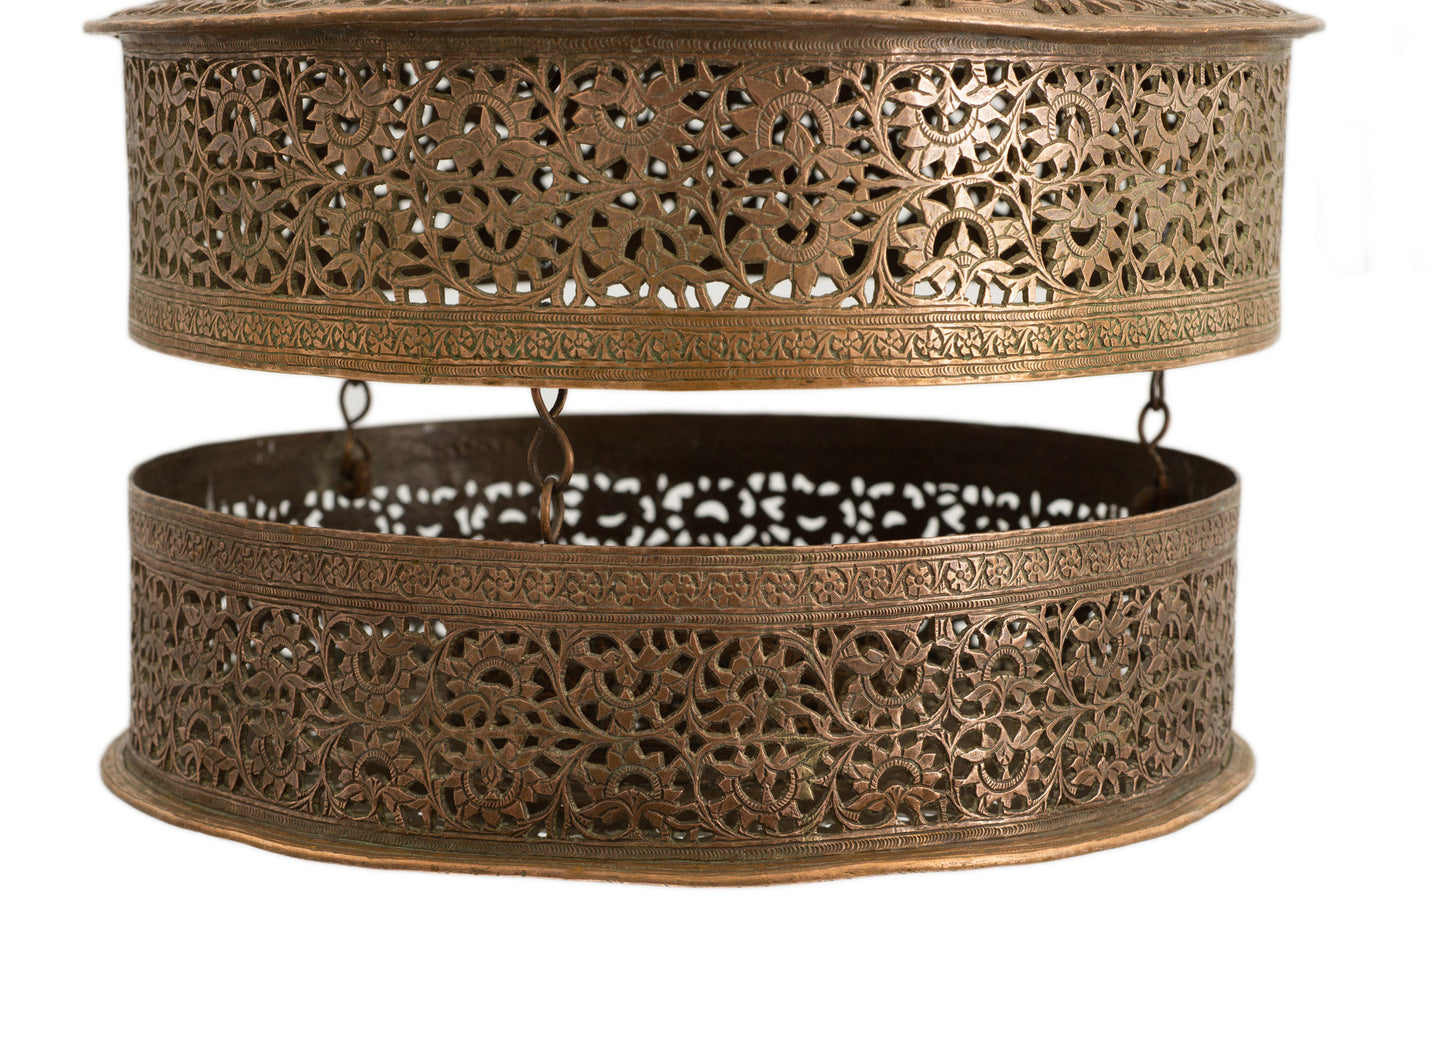 Antique/Vintage Large Ottoman Copper Hanging Concertina Incense Burner/Lantern (Code 2756)